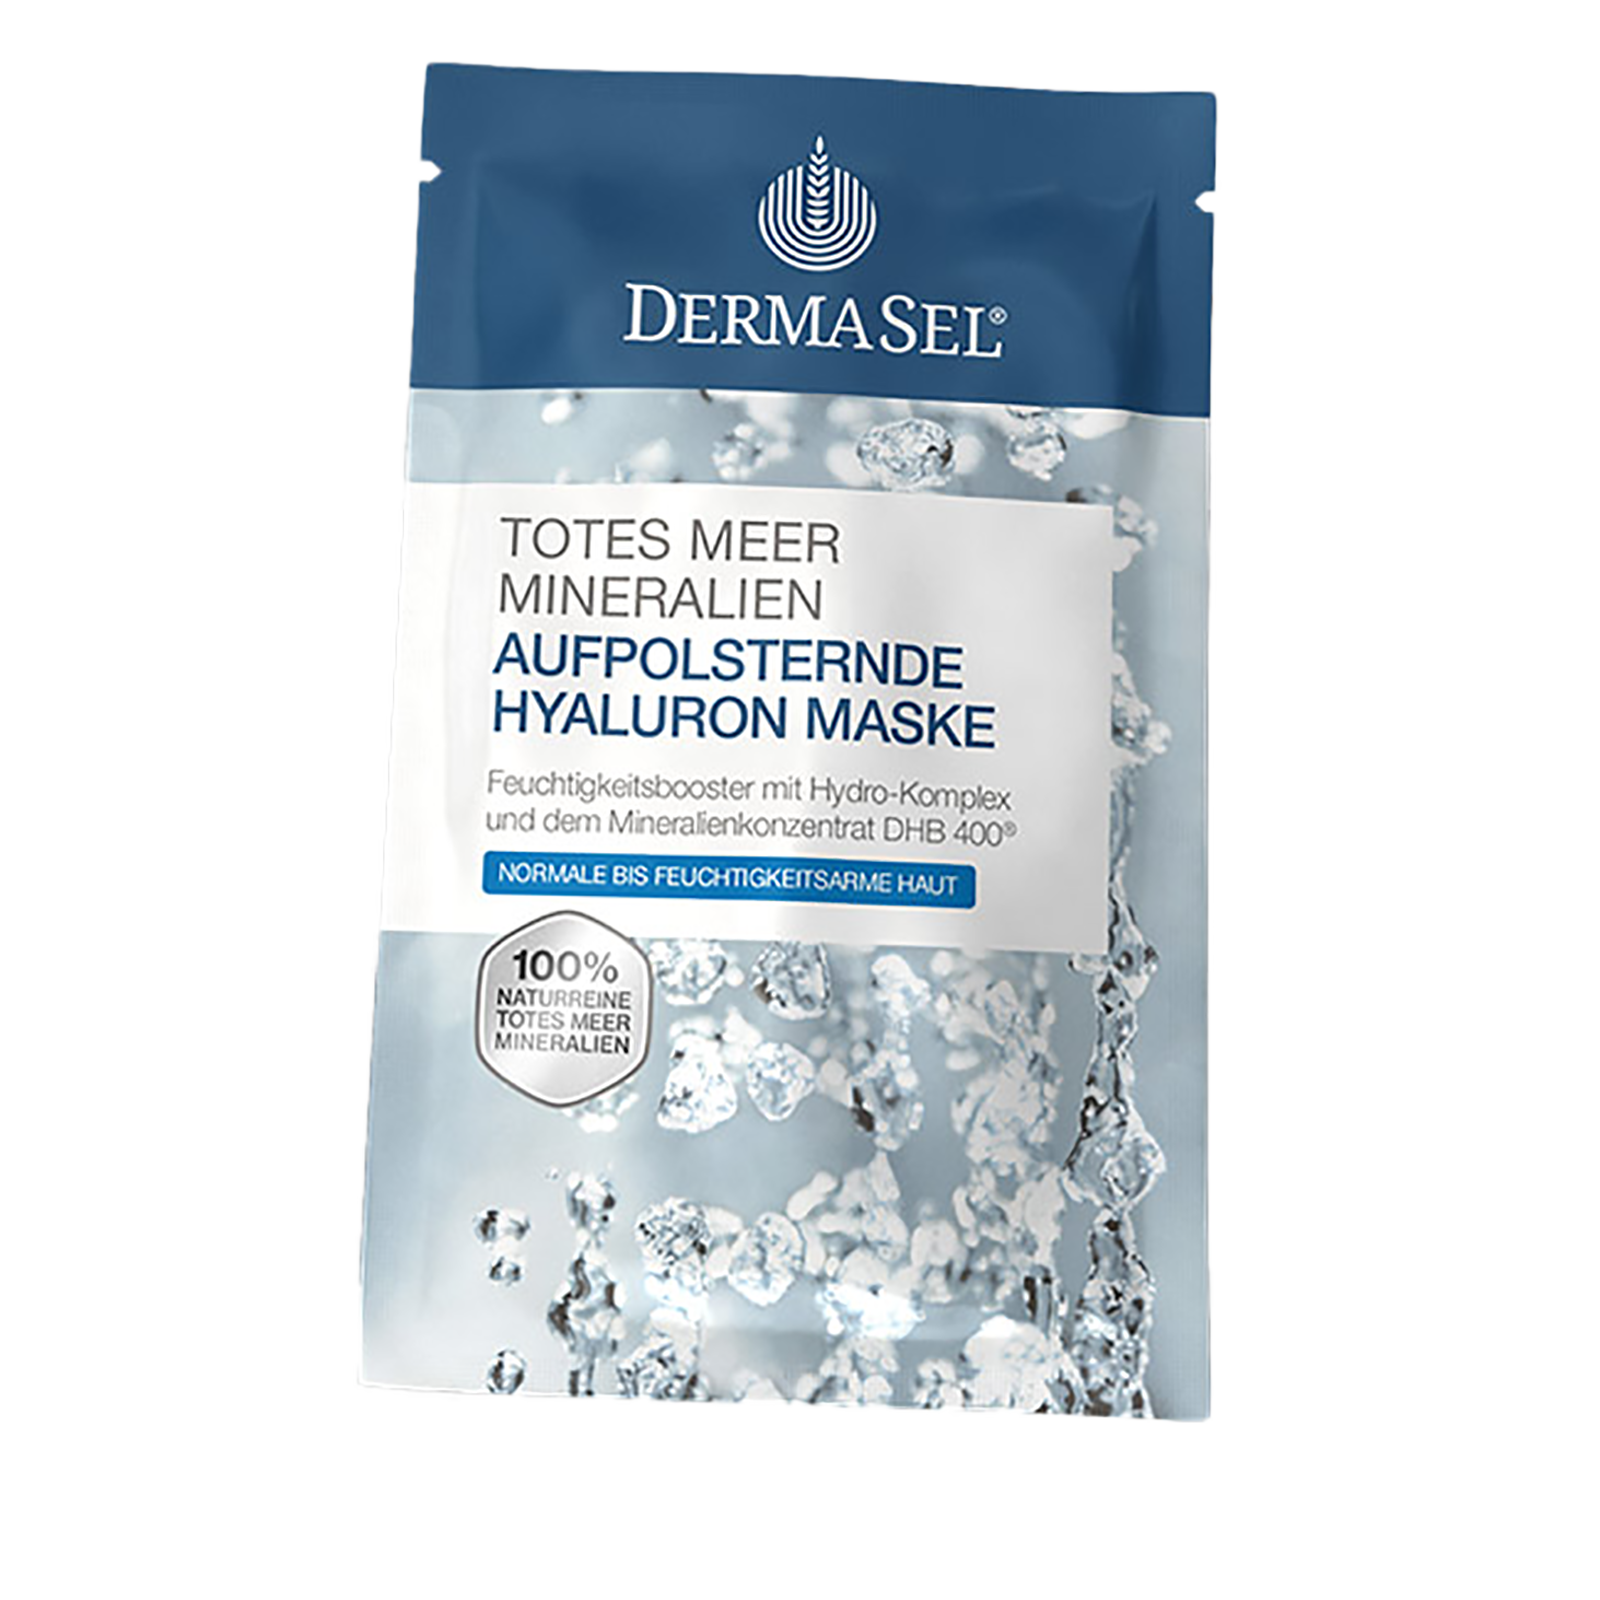 DermaSel® Totes Meer Mineralien Aufpolsternde Hyaluron Maske